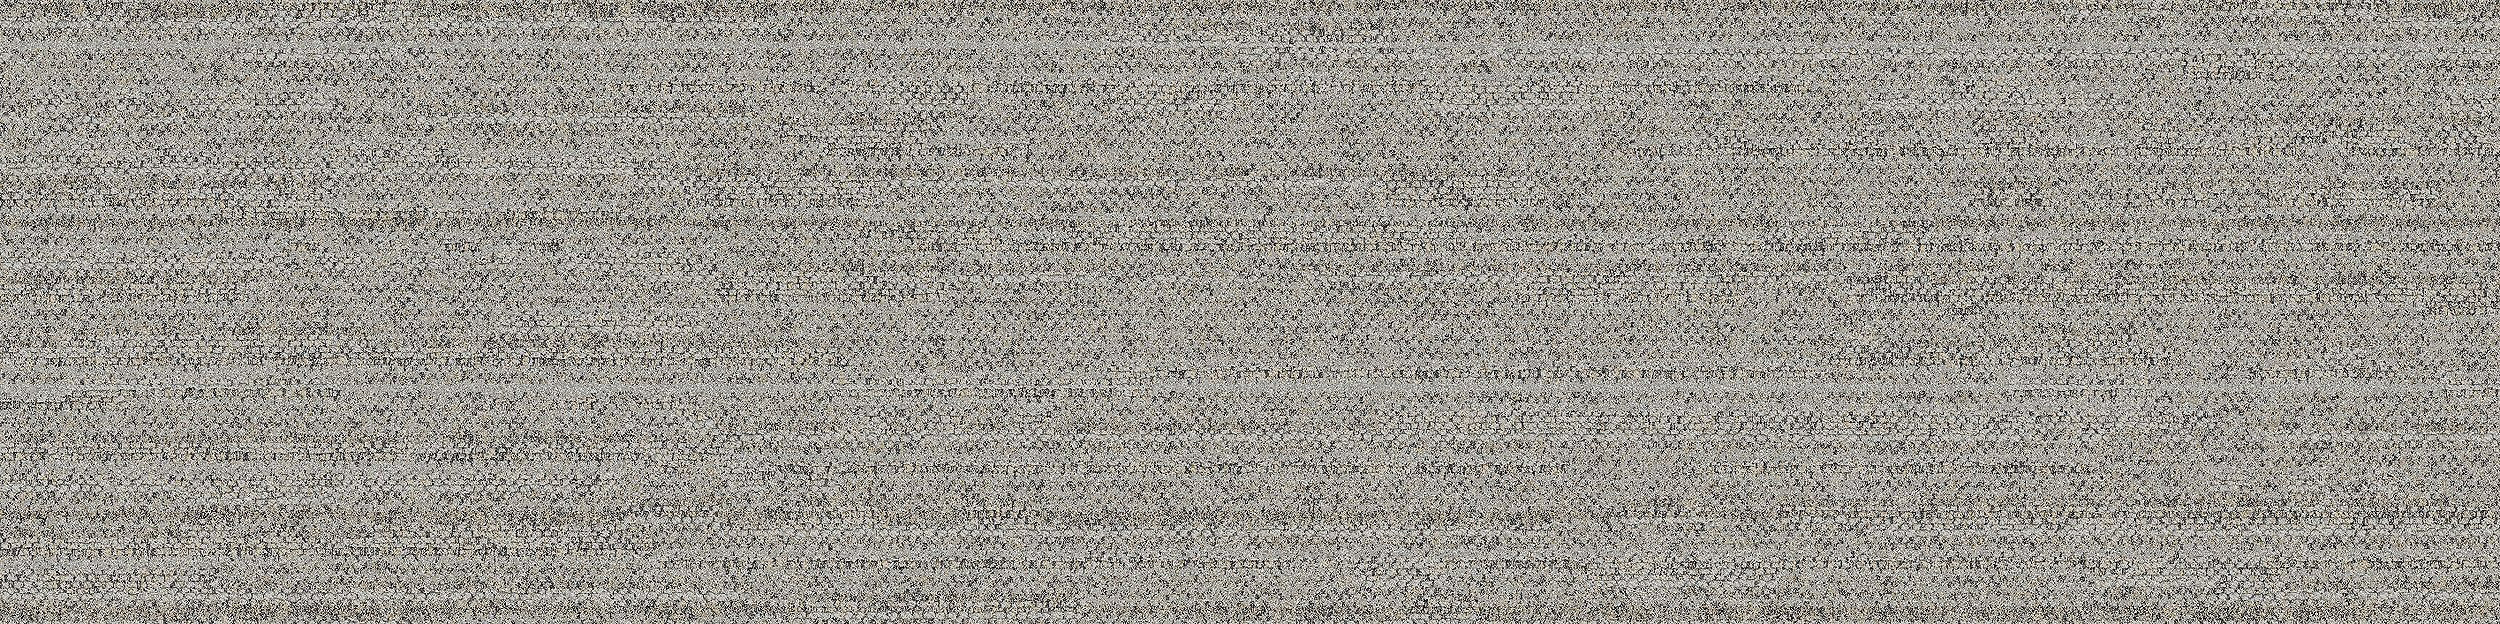 WW880 Carpet Tile In Linen Loom numéro d’image 8